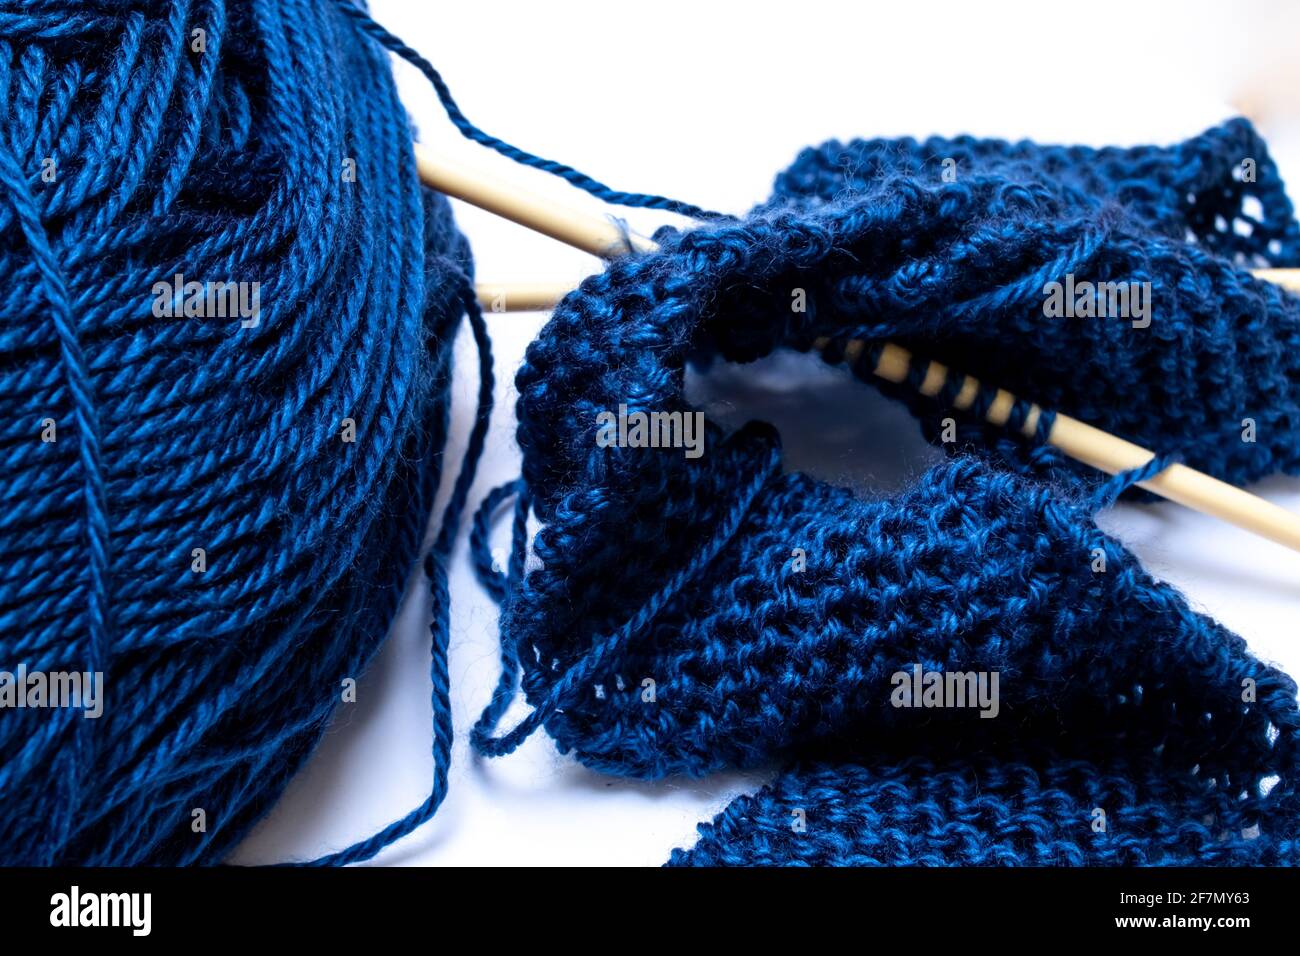 Mitternachtsblaues Garn, verworren und leicht verirrt neben beigefarbenen Stricknadeln, die einen kleinen klassischen Perlenstrick-Schal zusammenhalten. Stockfoto